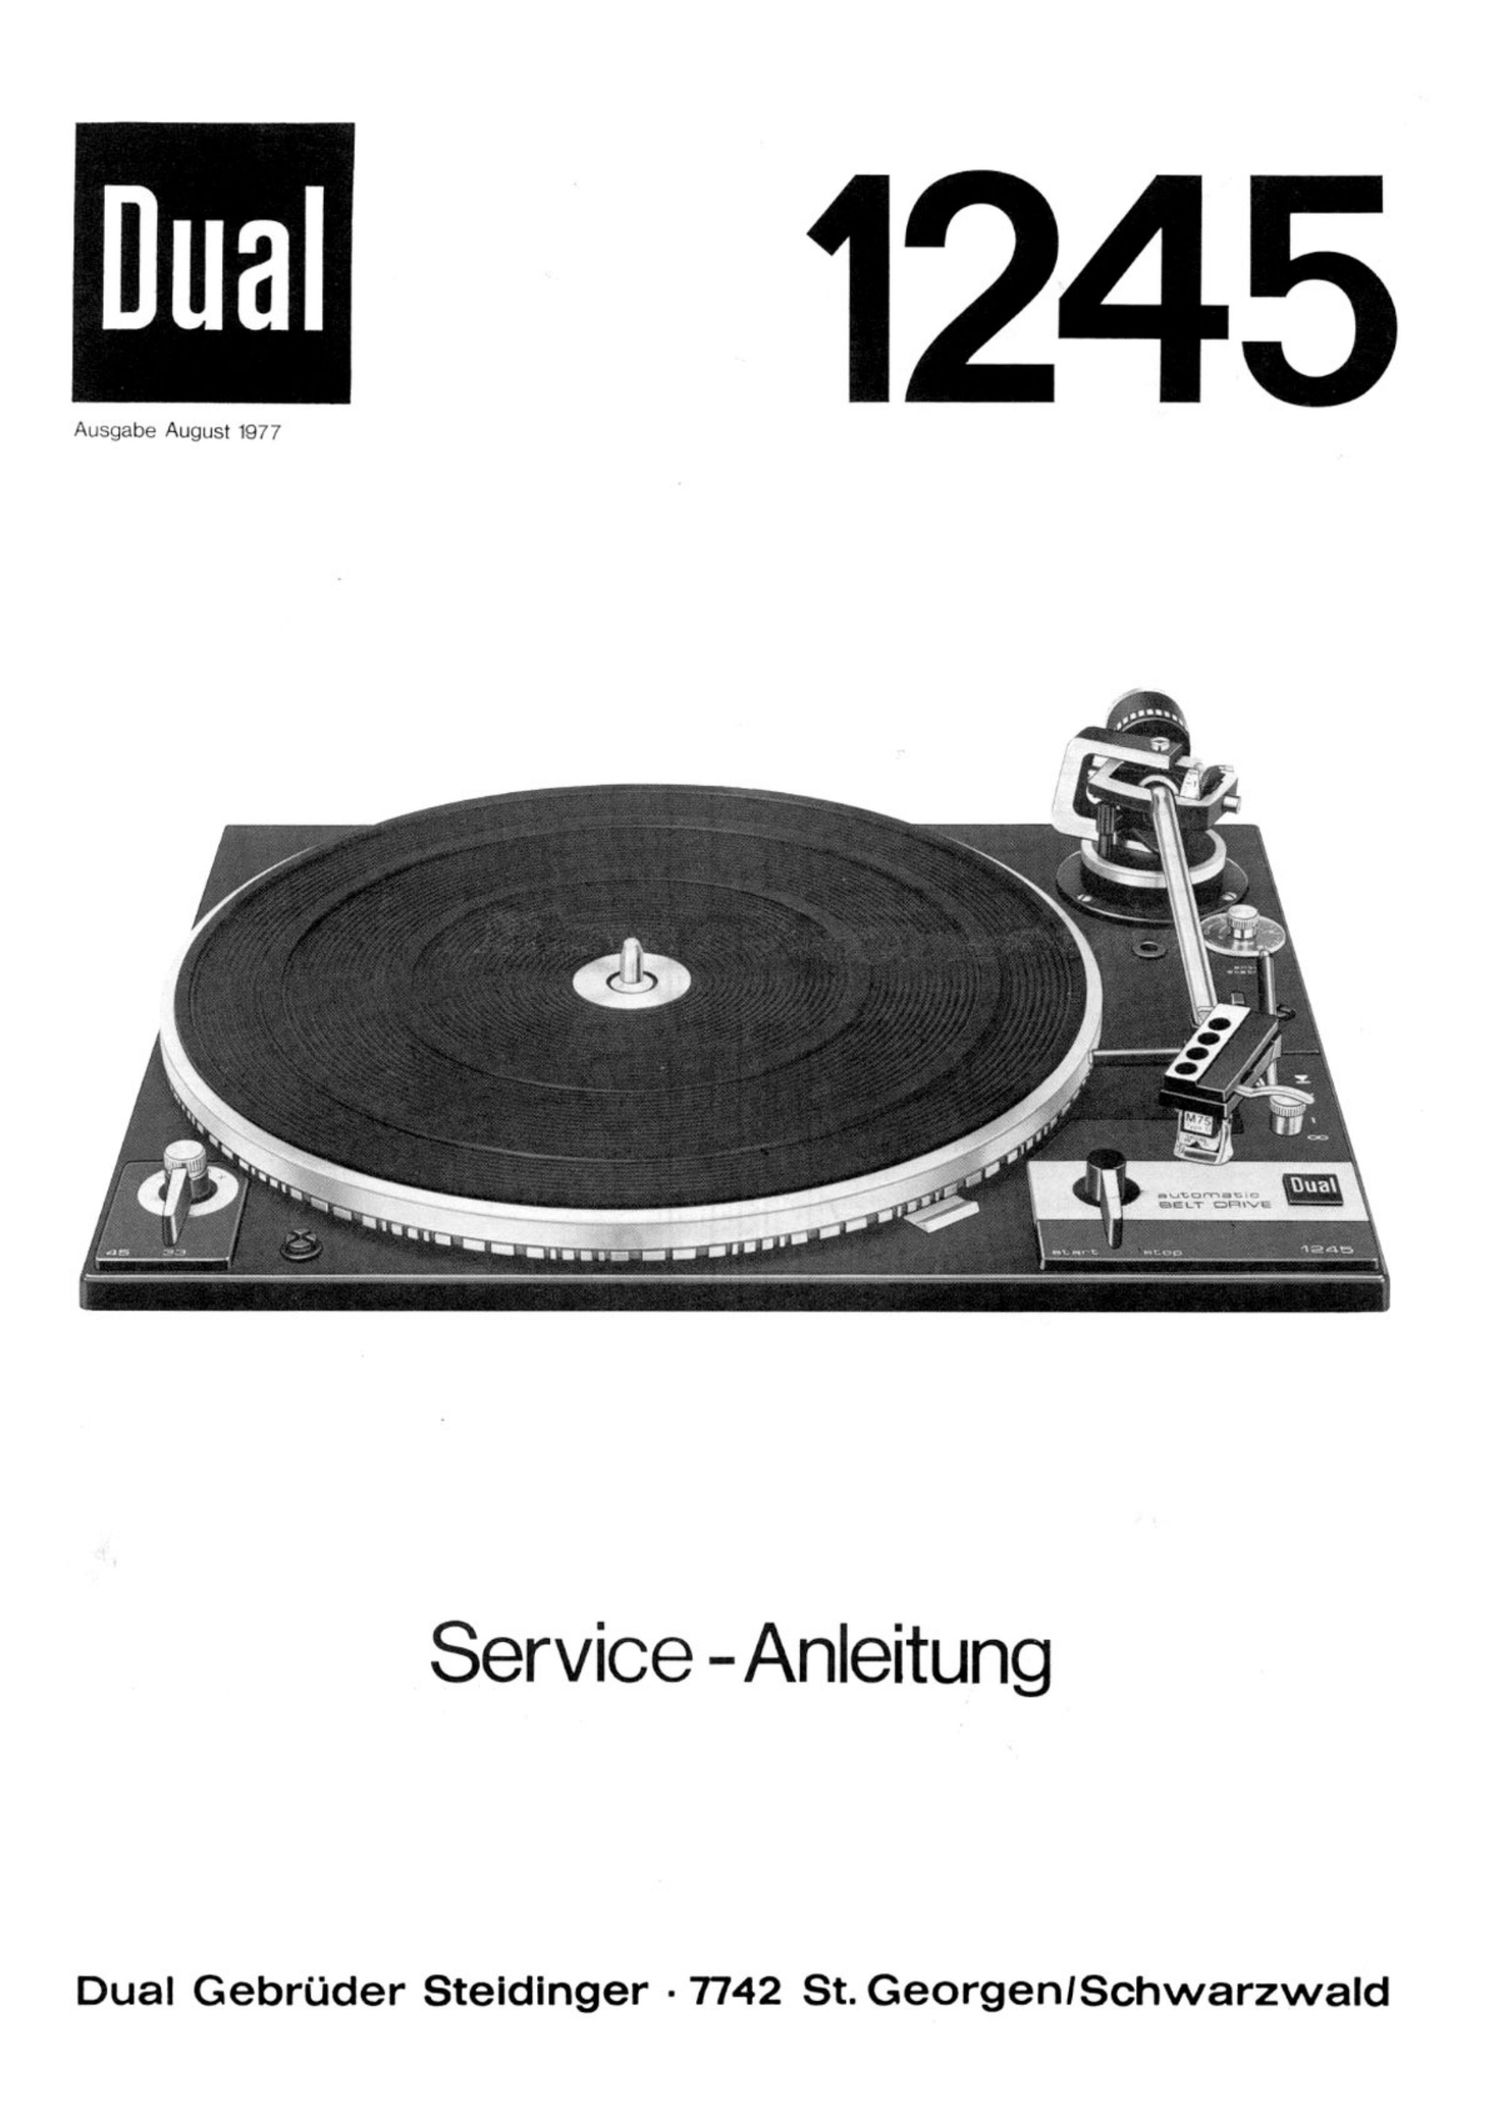 Service Manual-Anleitung für Dual 1237 